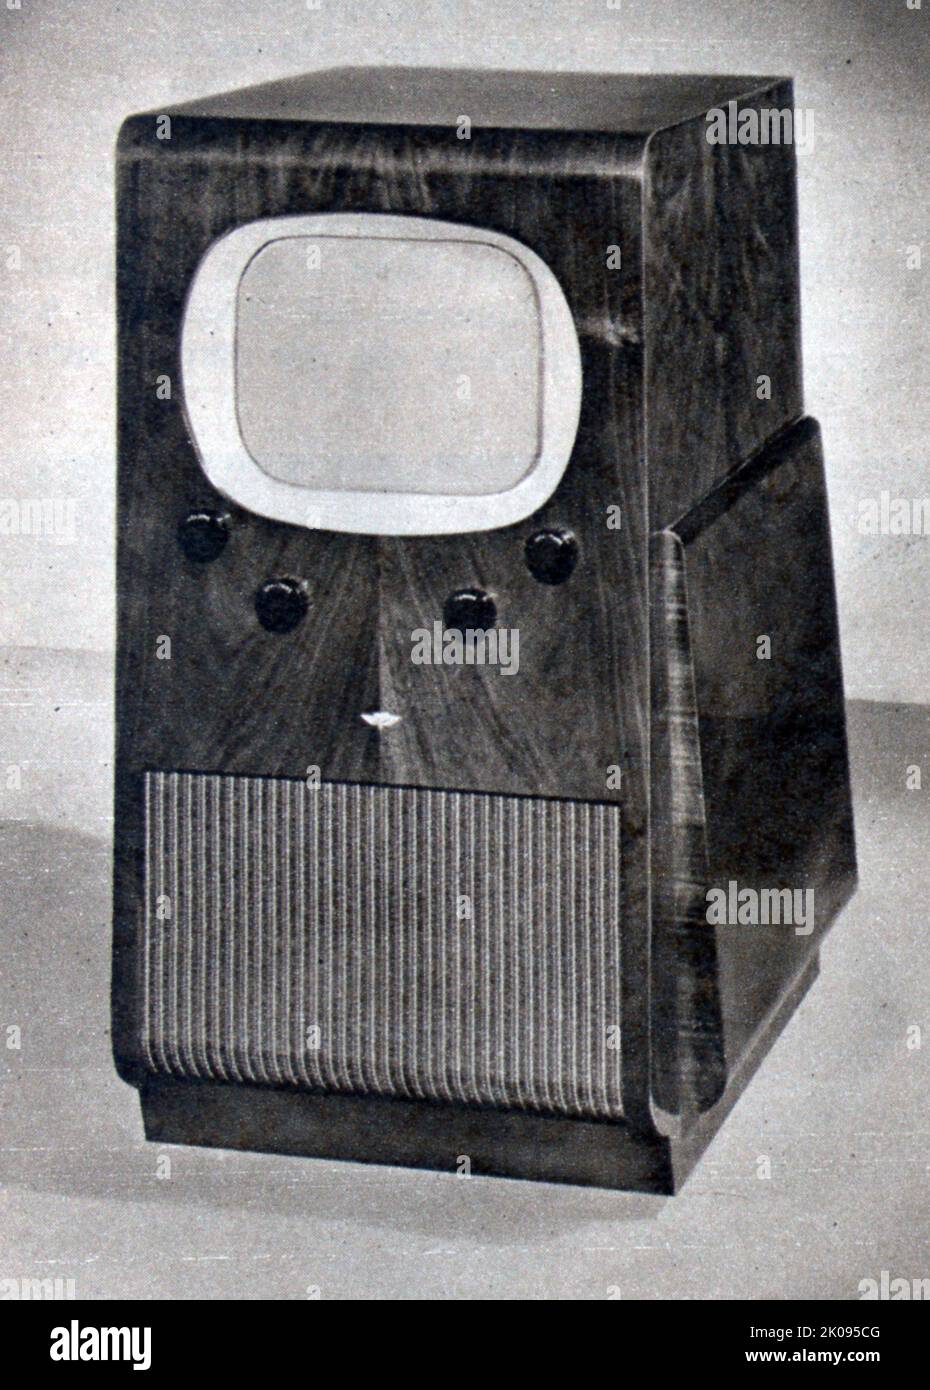 Console récepteur de télévision avec tube cathode-Ray de 12 pouces, de Kolster-Brandes. Banque D'Images